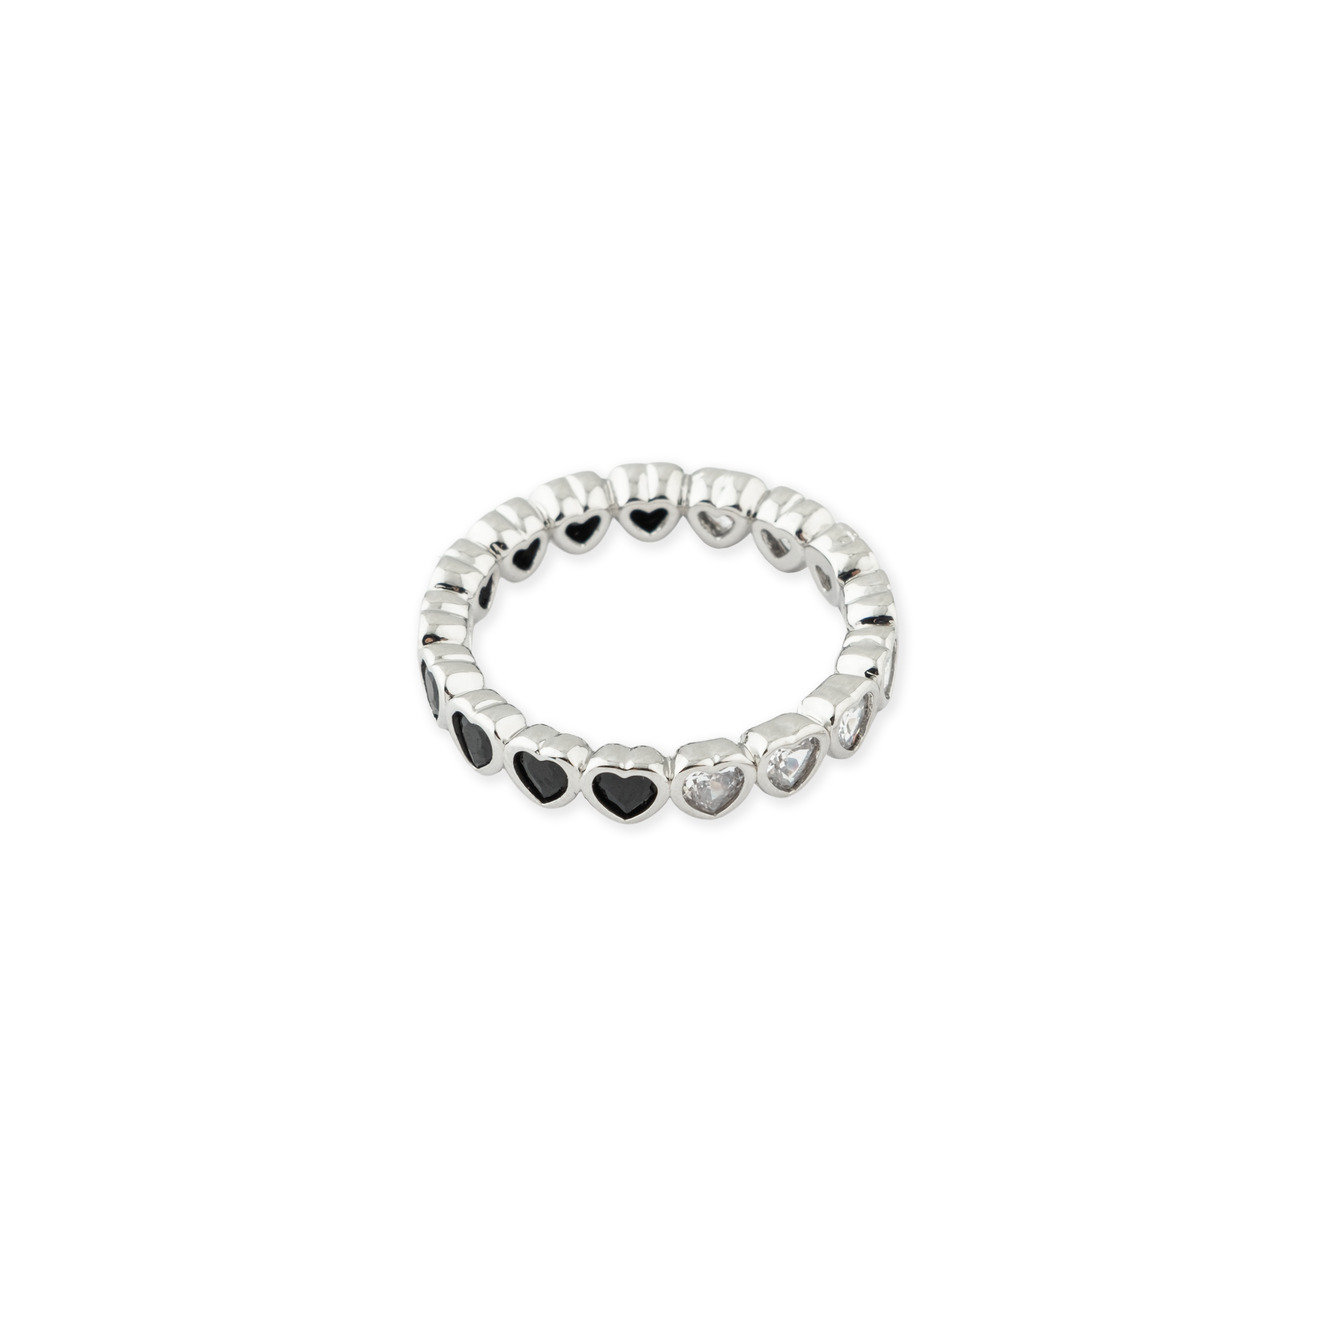 Herald Percy Серебристое кольцо из сердец с белыми и черными кристаллами lisa smith серебристое кольцо из множества бусин